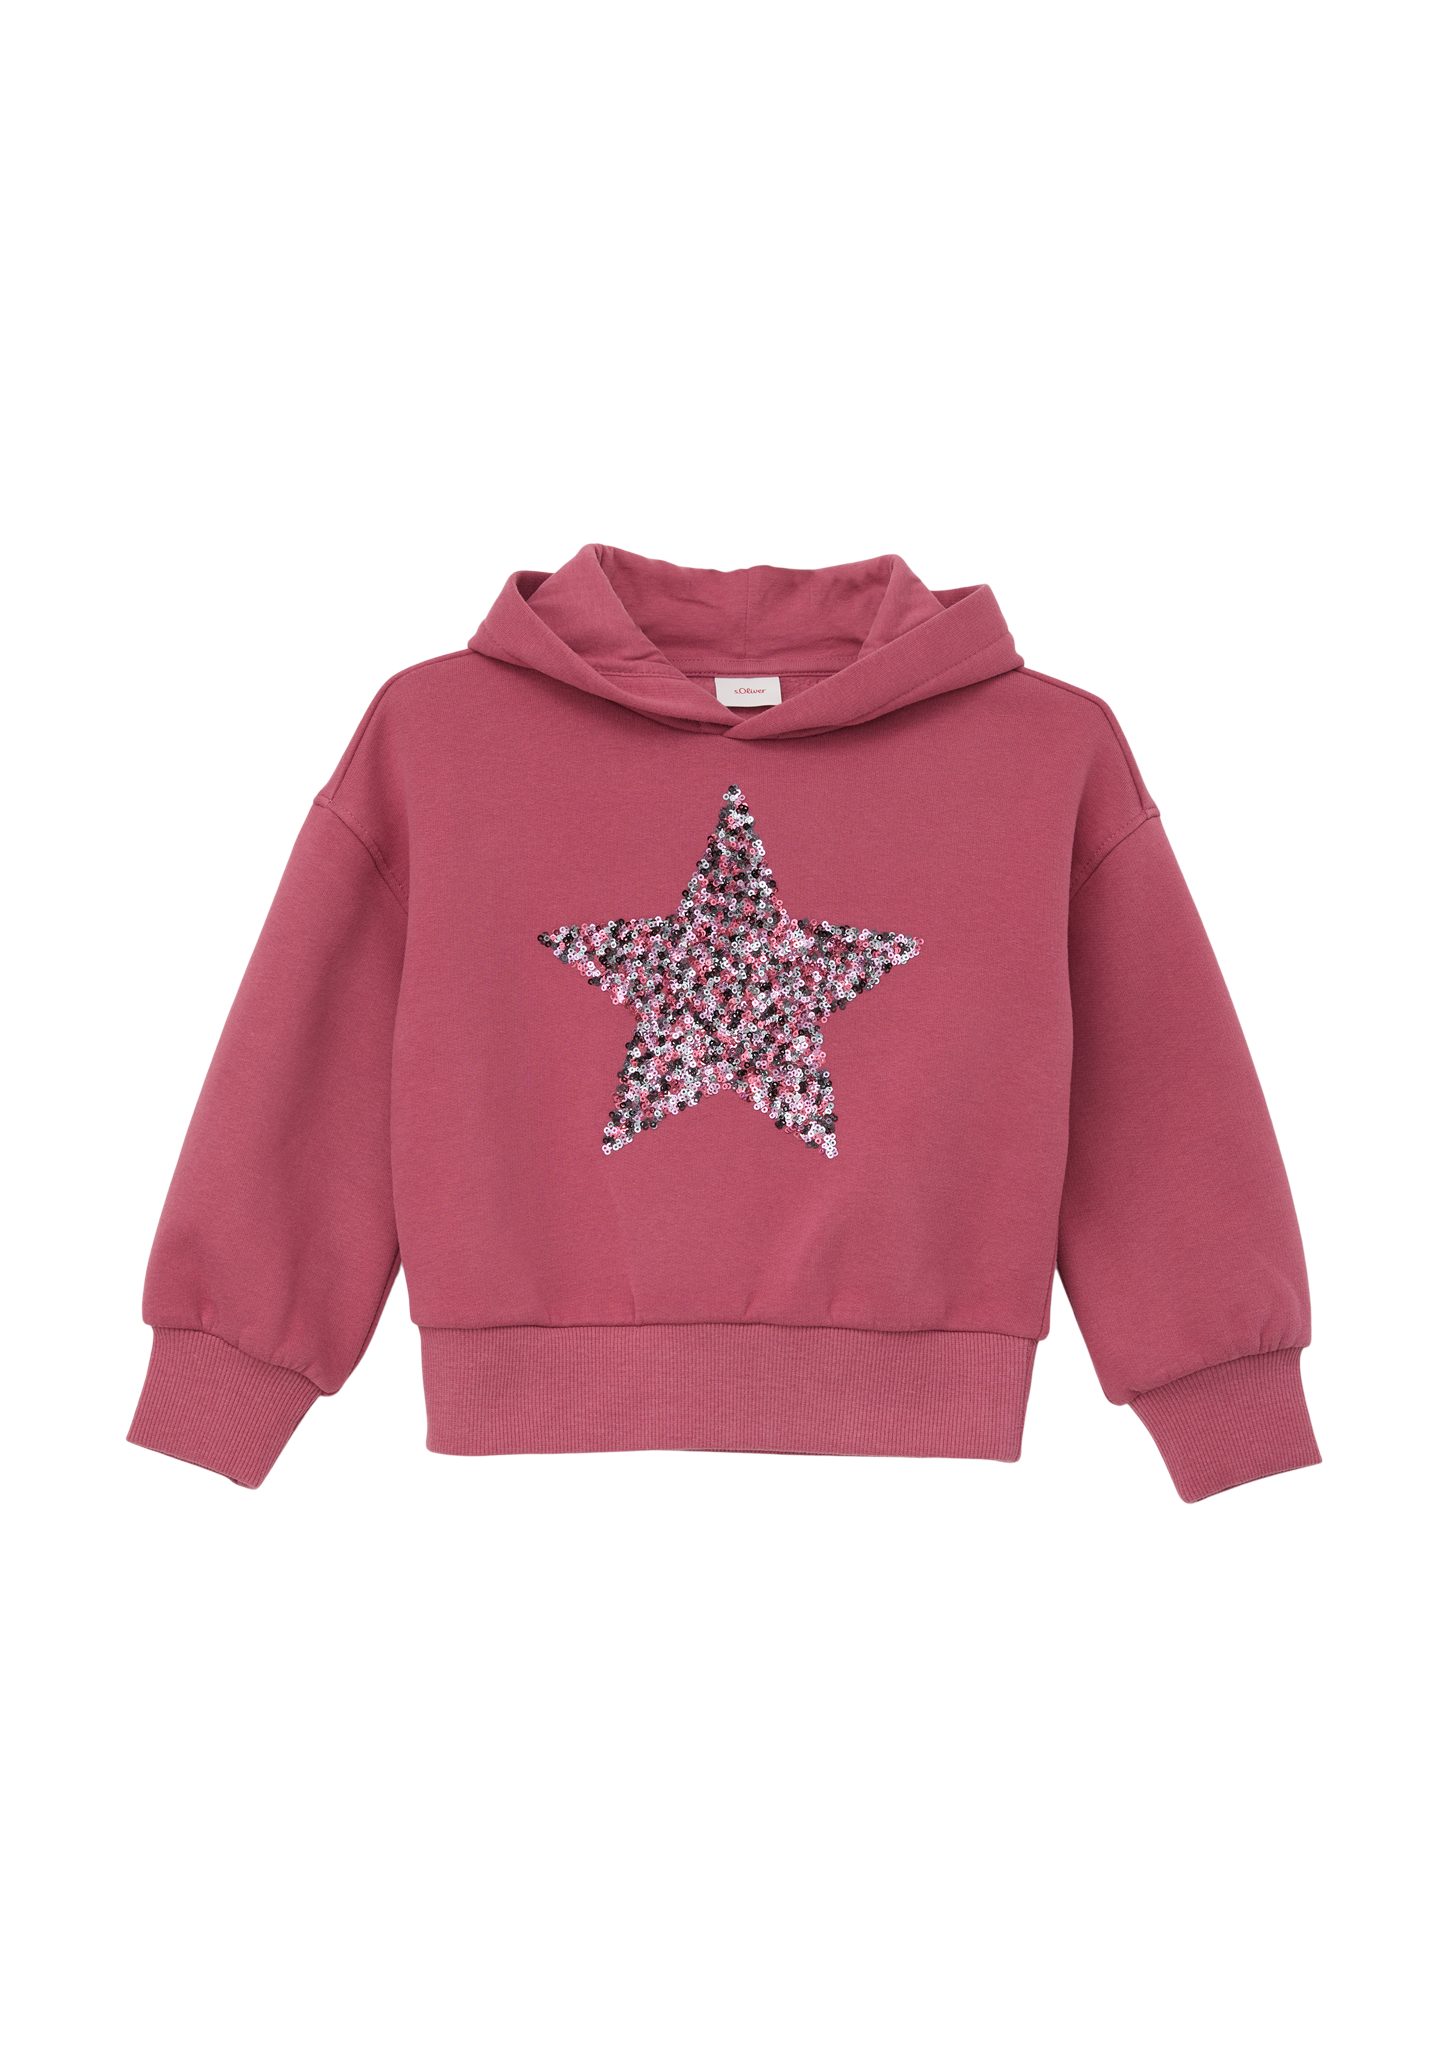 s.Oliver Sweatshirt Sweatshirt mit Pailletten Pailletten-Stern pink